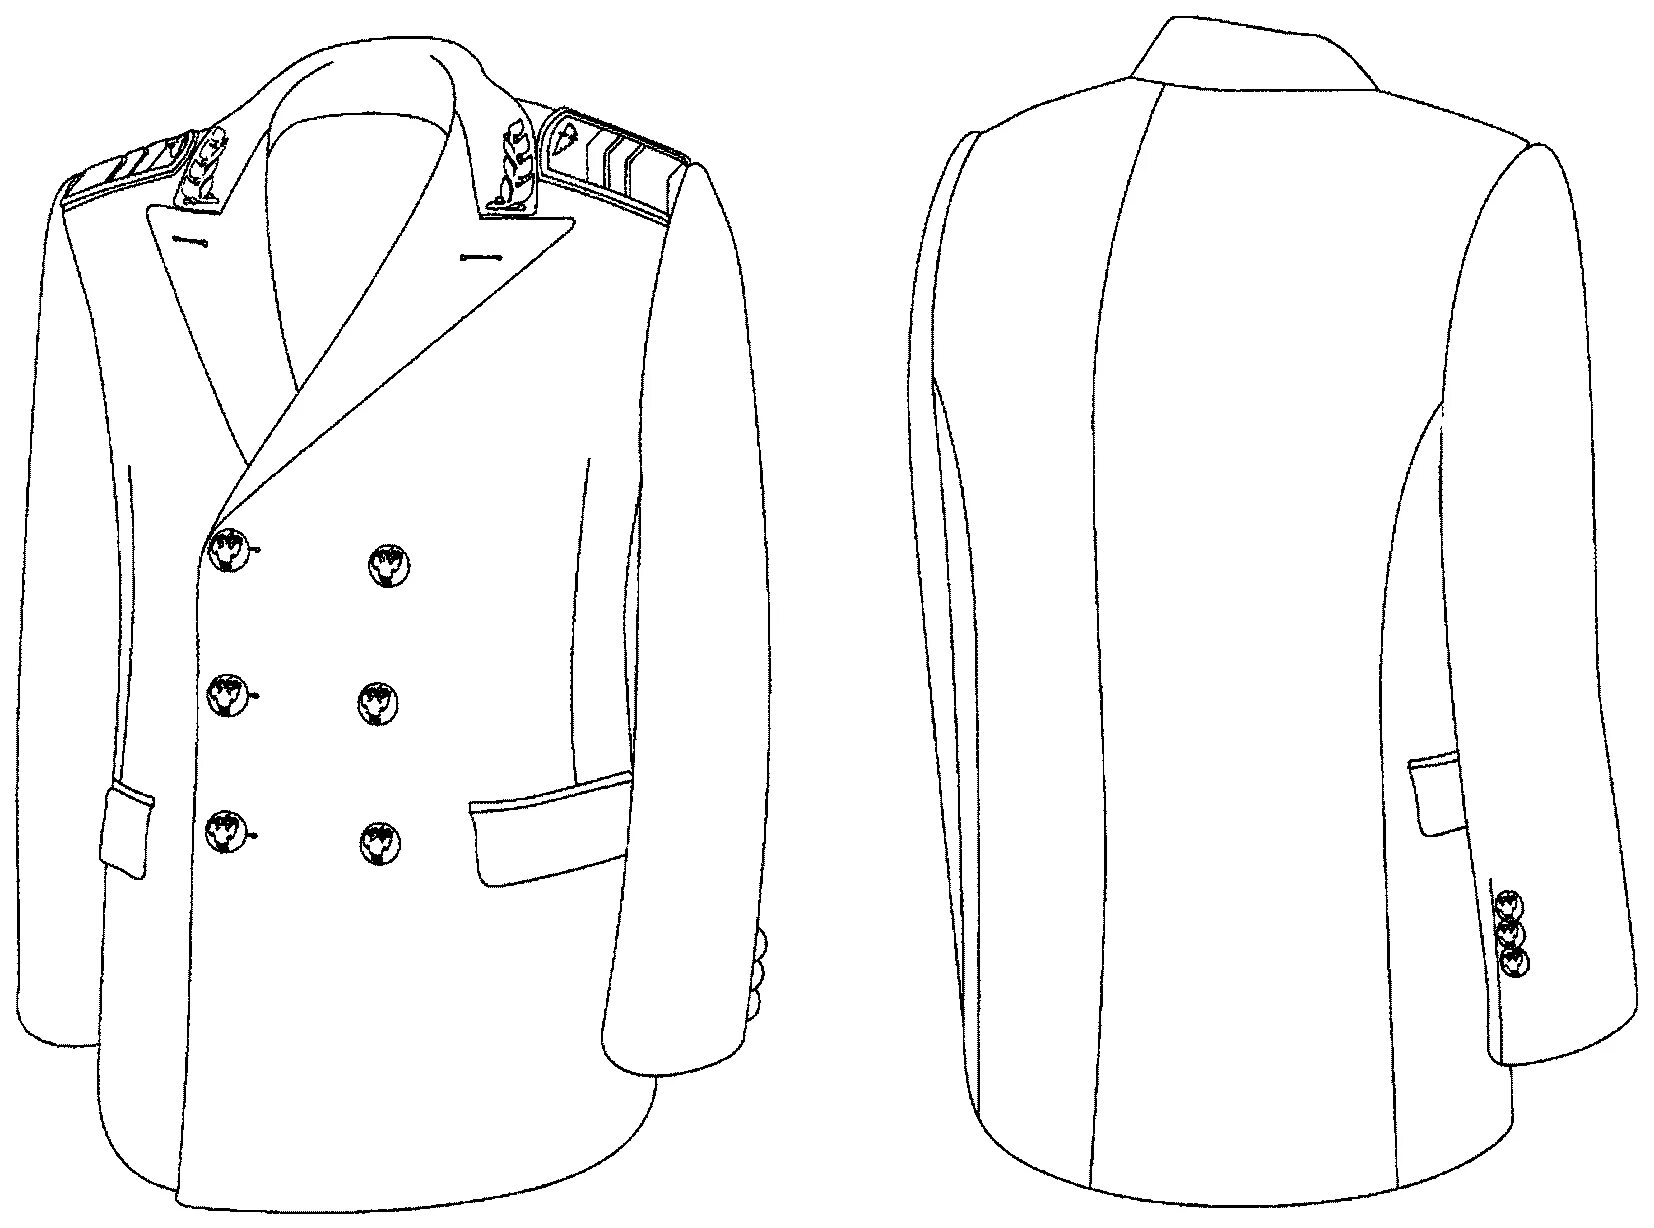 Китель. Технический рисунок пиджака. Пиджак мужской рисунок. Технический эскиз пиджака сбоку.